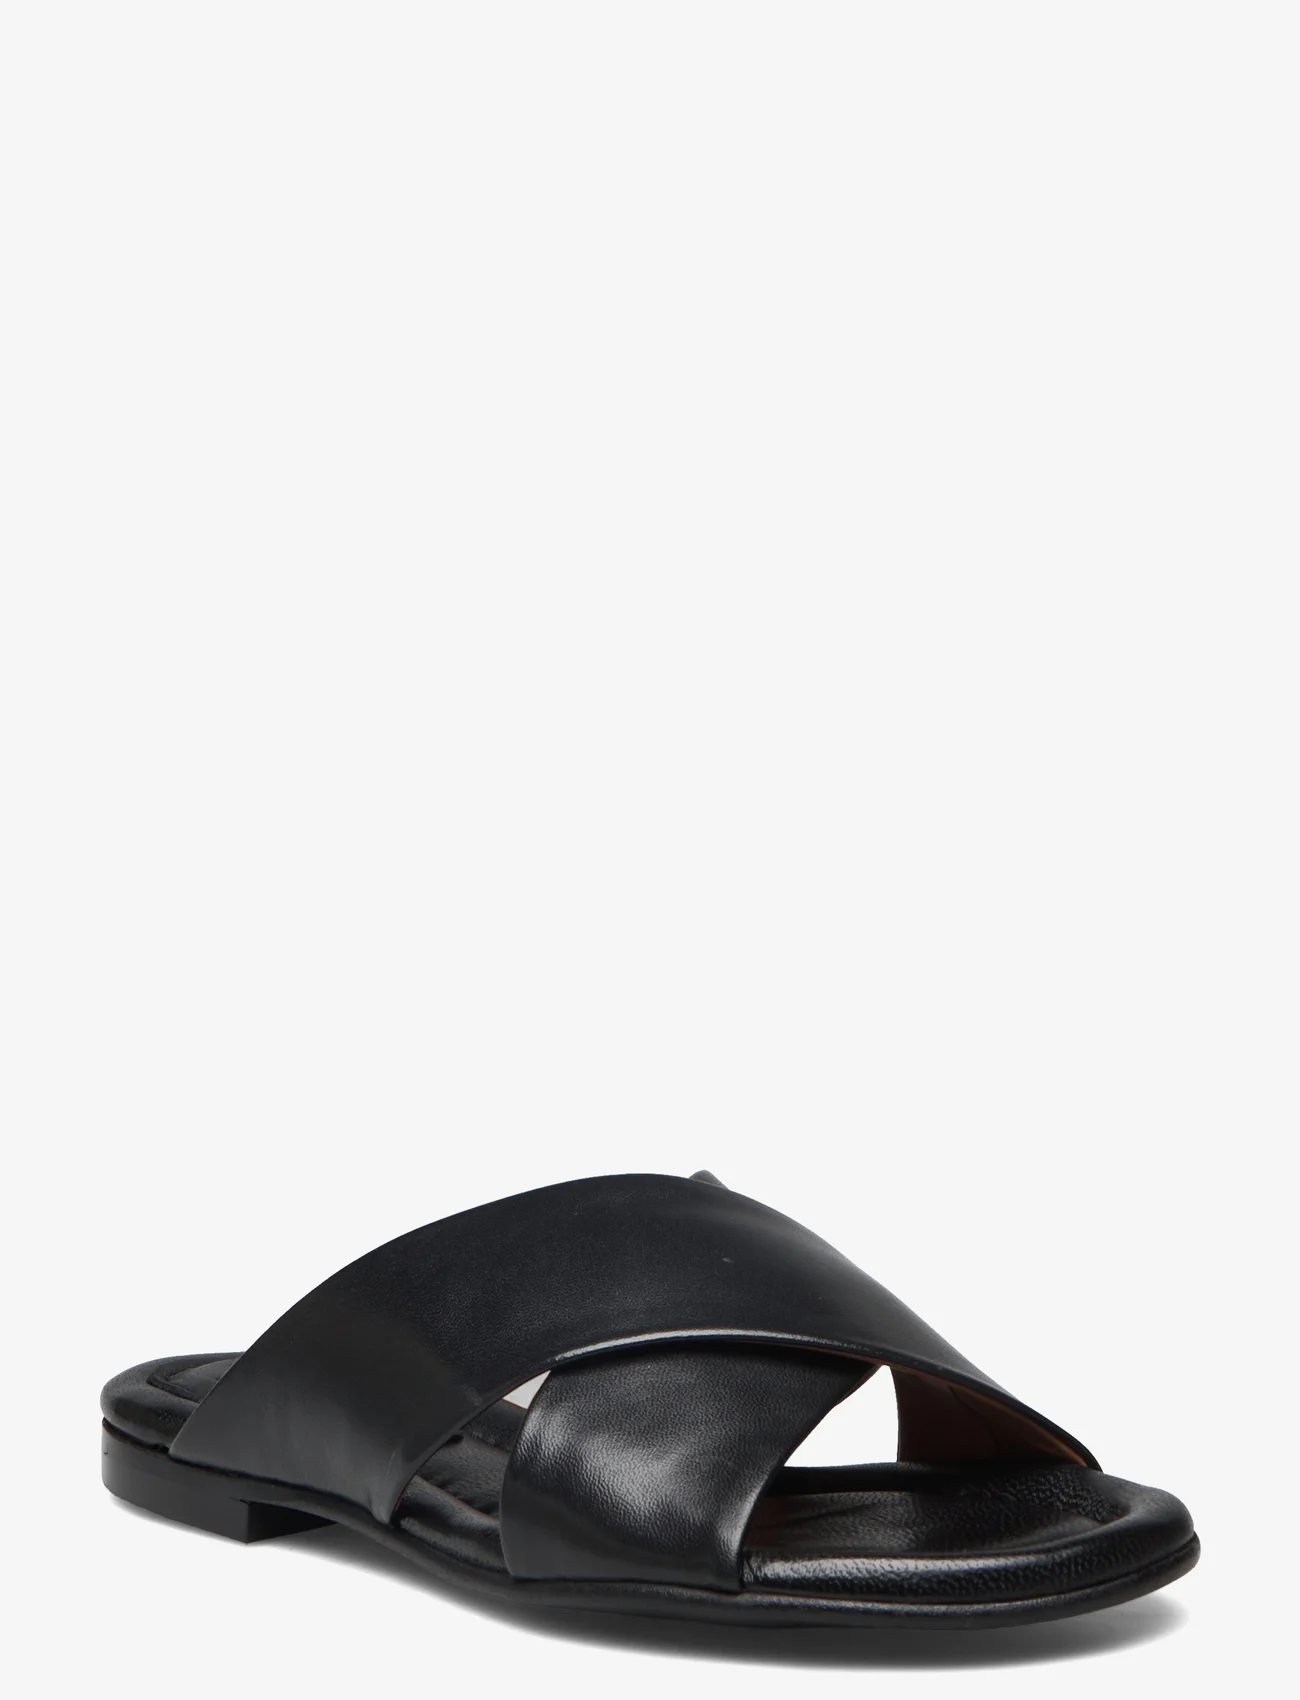 Billi Bi - Sandals - flat sandals - black nappa 70 - 0